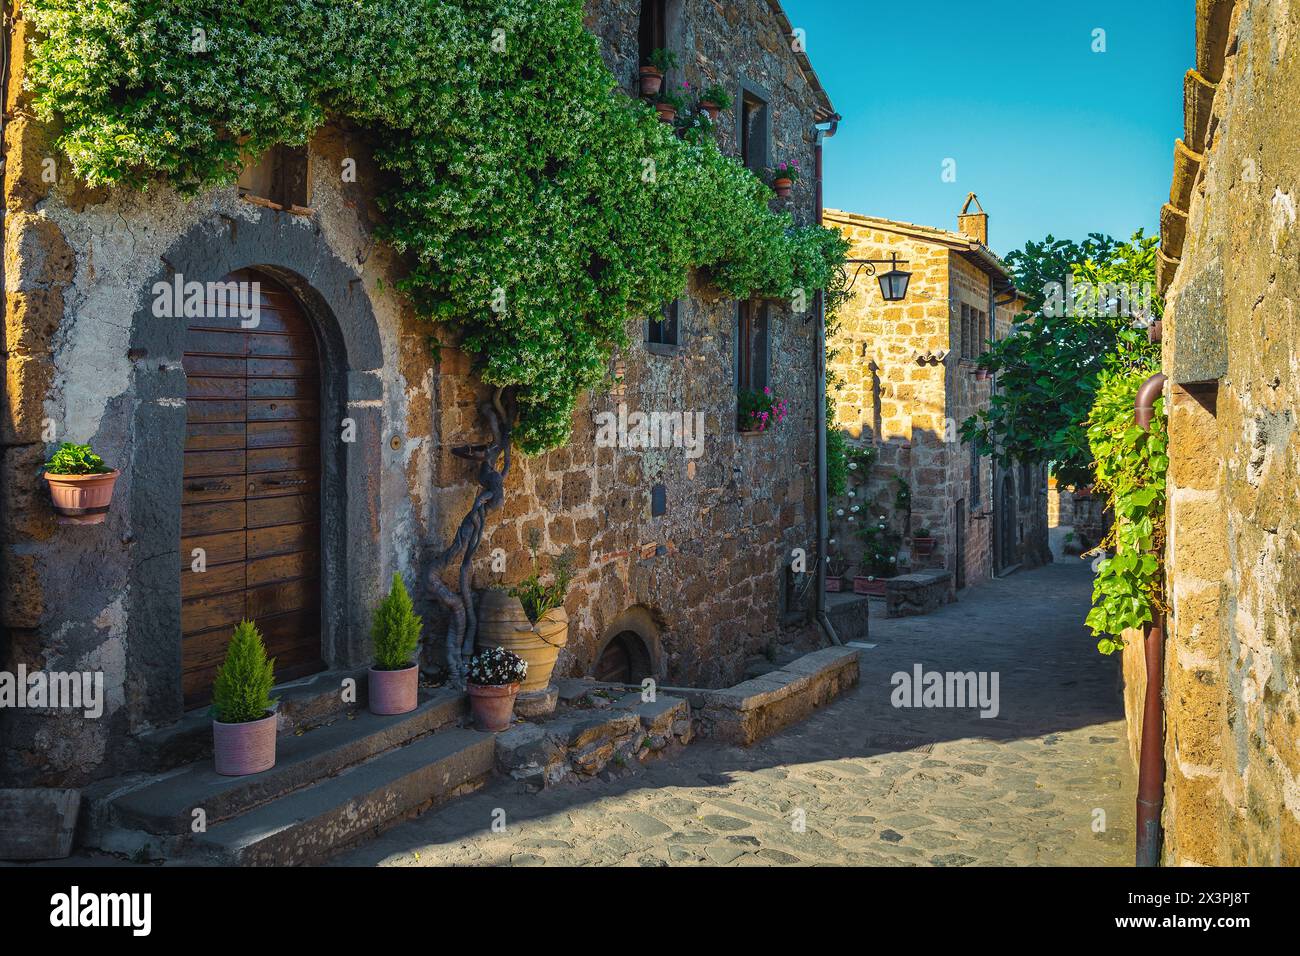 Spettacolare e profumato fiore di gelsomino sulla parete della casa in pietra, Civita di Bagnoregio, Provincia di Viterbo, Lazio, Italia, Europa Foto Stock